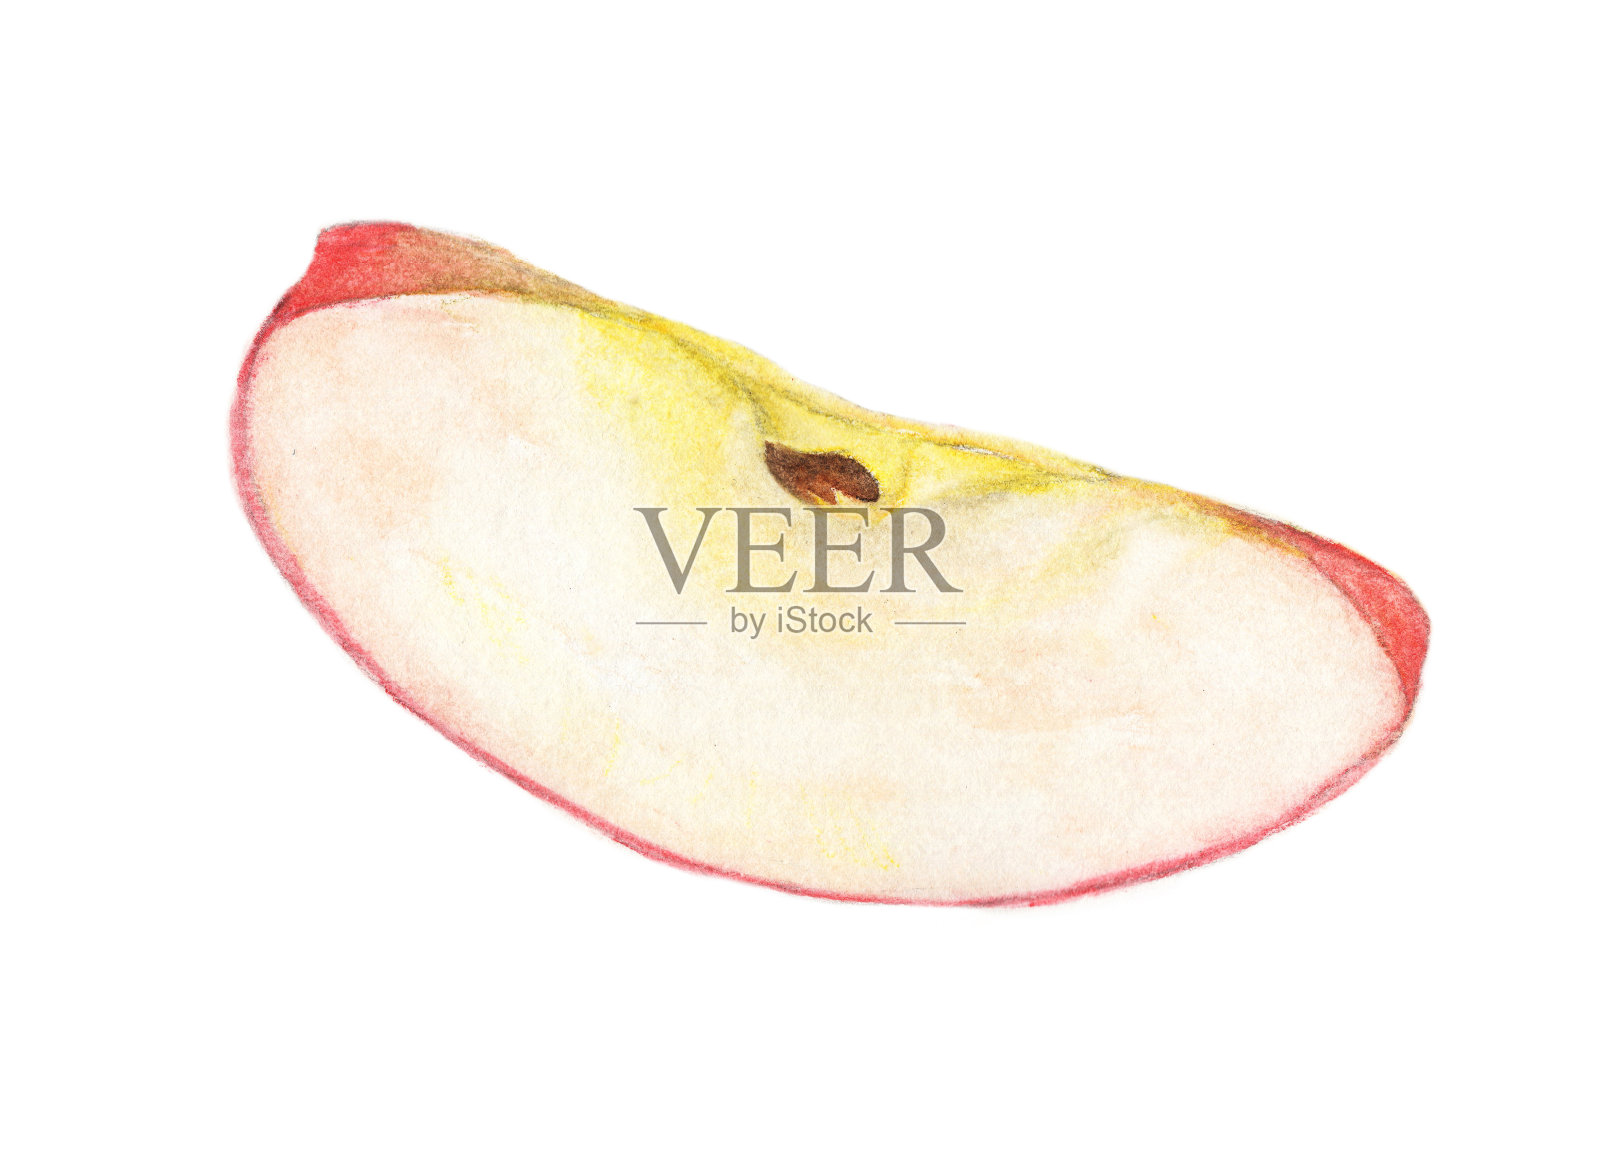 水彩画苹果水果片-红苹果四分之一插画图片素材